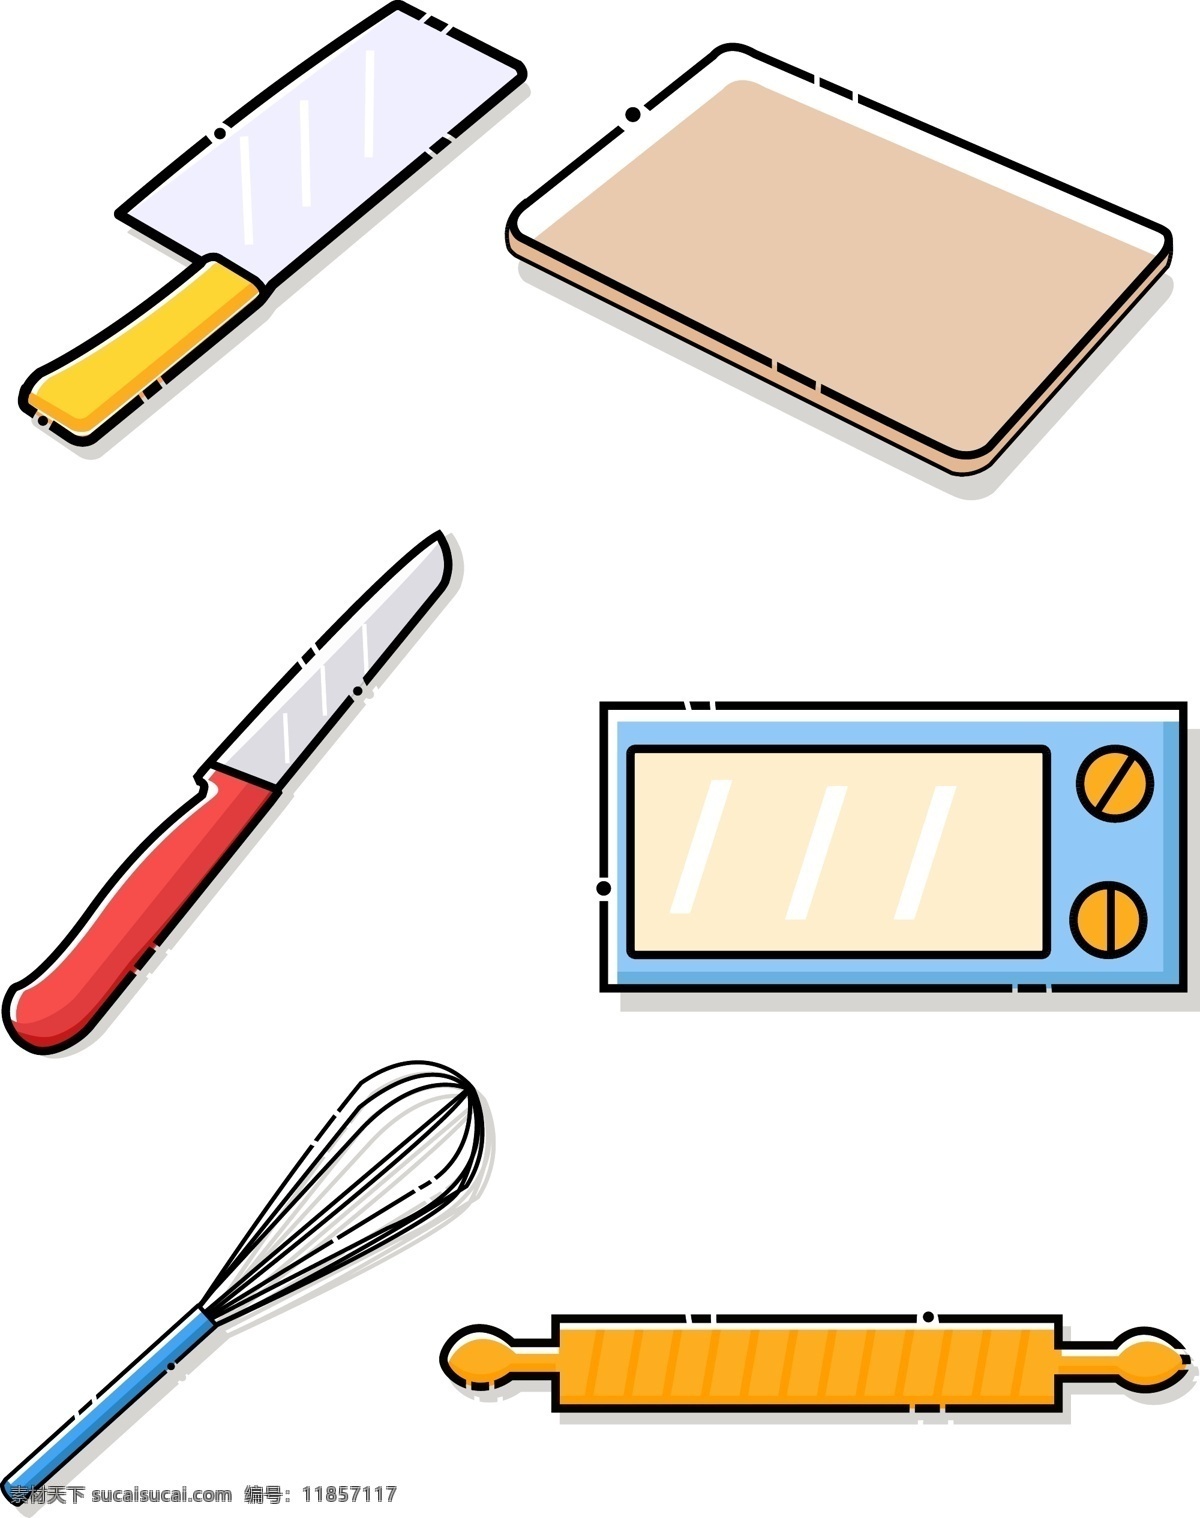 矢量 卡通 简约 可爱 厨房用品 生活用品 菜刀 刀 微波炉 菜板 打蛋器 擀面杖